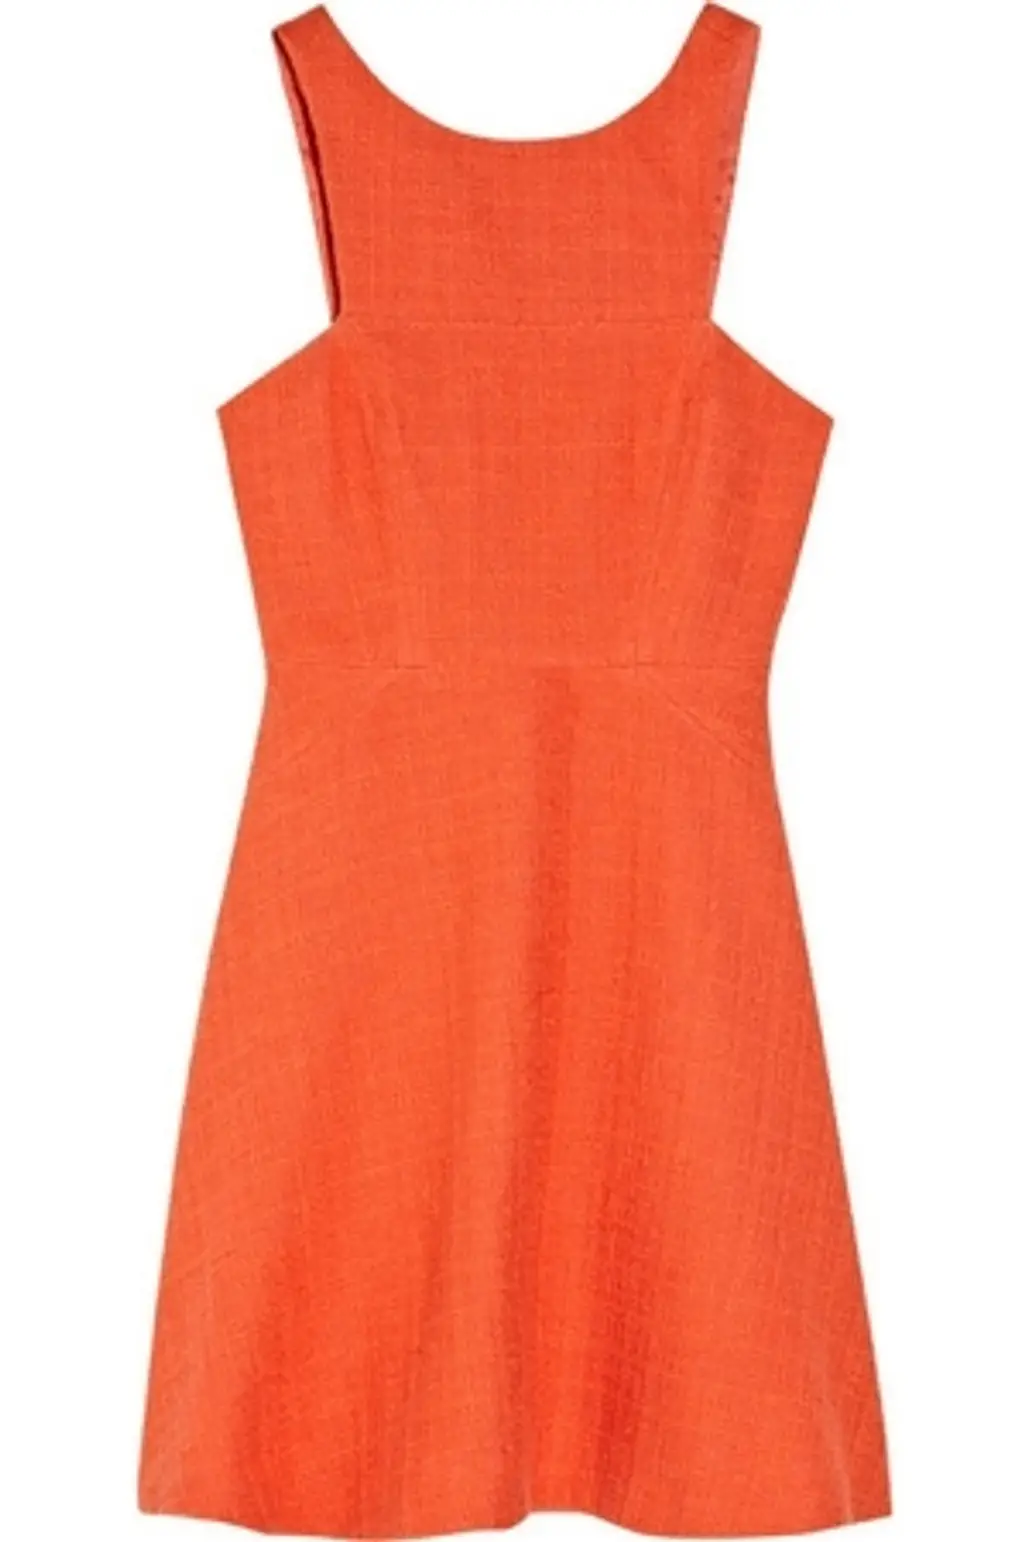 Tibi Basketweave Cotton-Blend a-line Dress